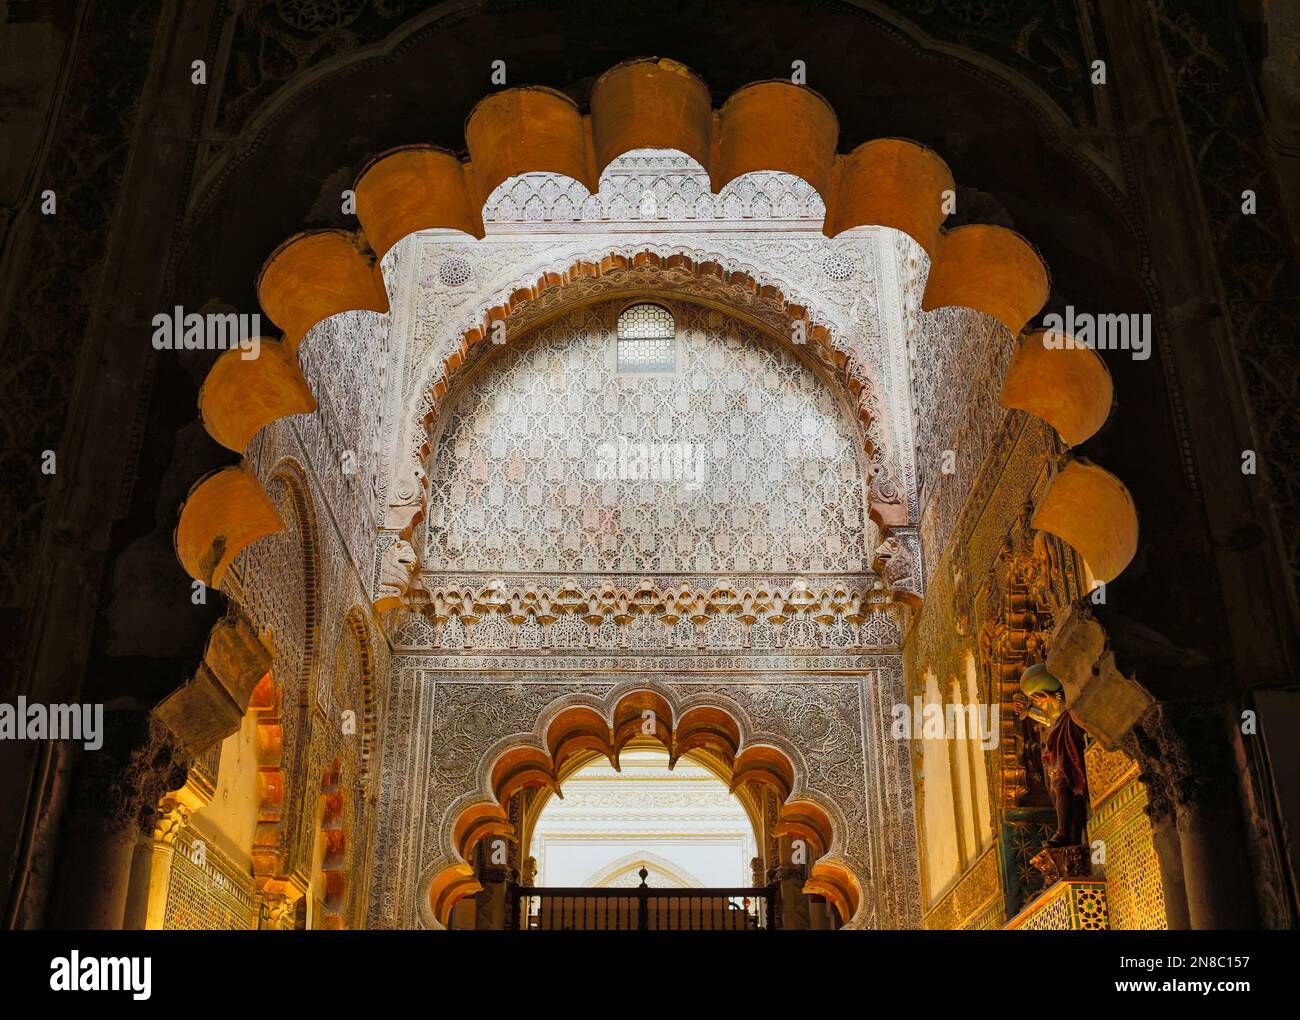 Éléments architecturaux mauresques. Intérieur de la Grande Mosquée de Cordoue ou la Mezquita, Cordoue, province de Cordoue, Andalousie, sud de l'Espagne. Le salut Banque D'Images